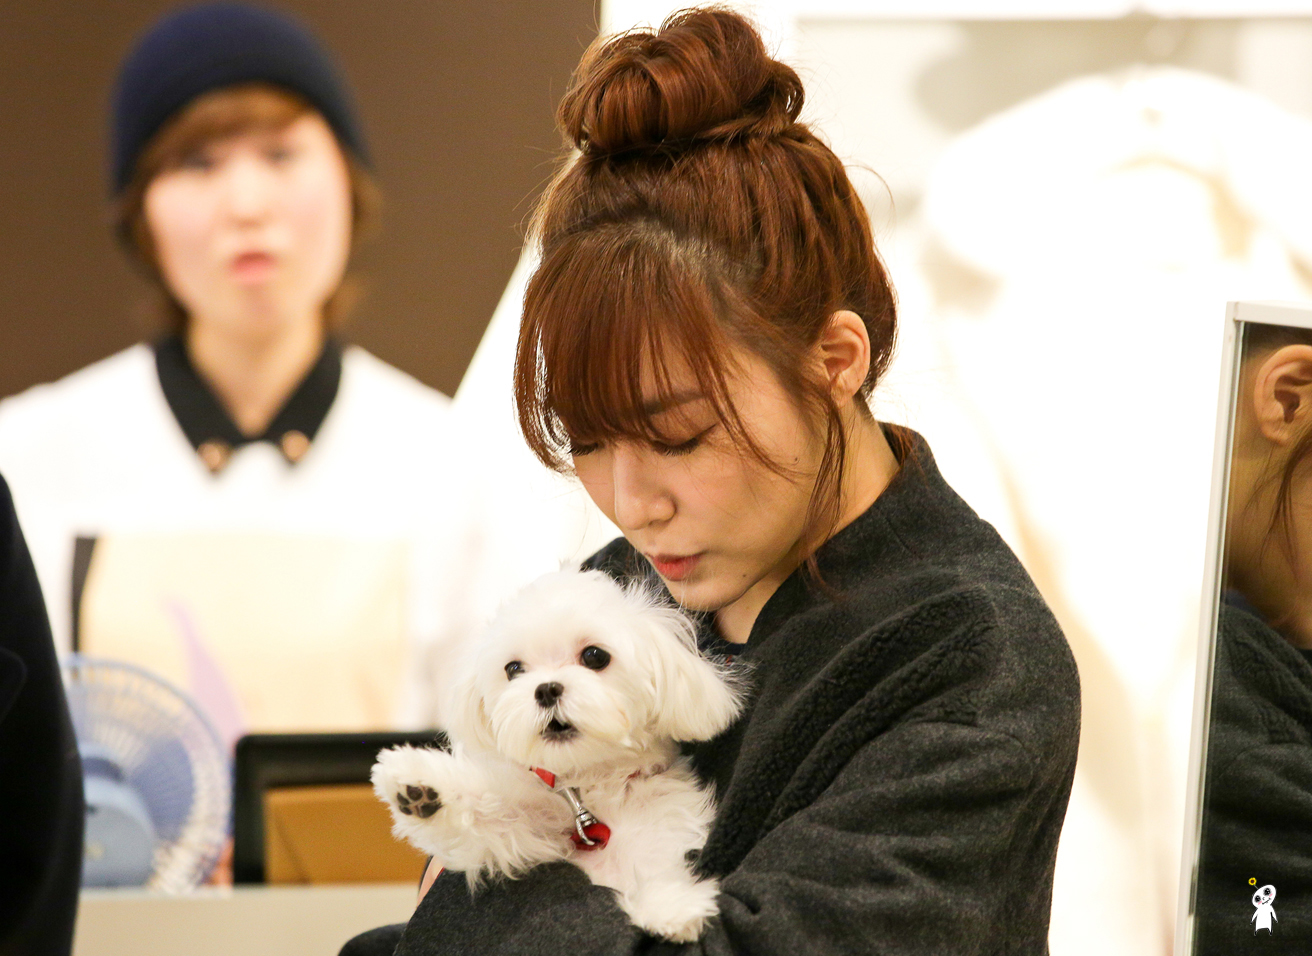 [PIC][28-11-2013]Tiffany ghé thăm cửa hàng "QUA" ở Hyundai Department Store vào trưa nay - Page 3 245FB54052980CB92C76A5